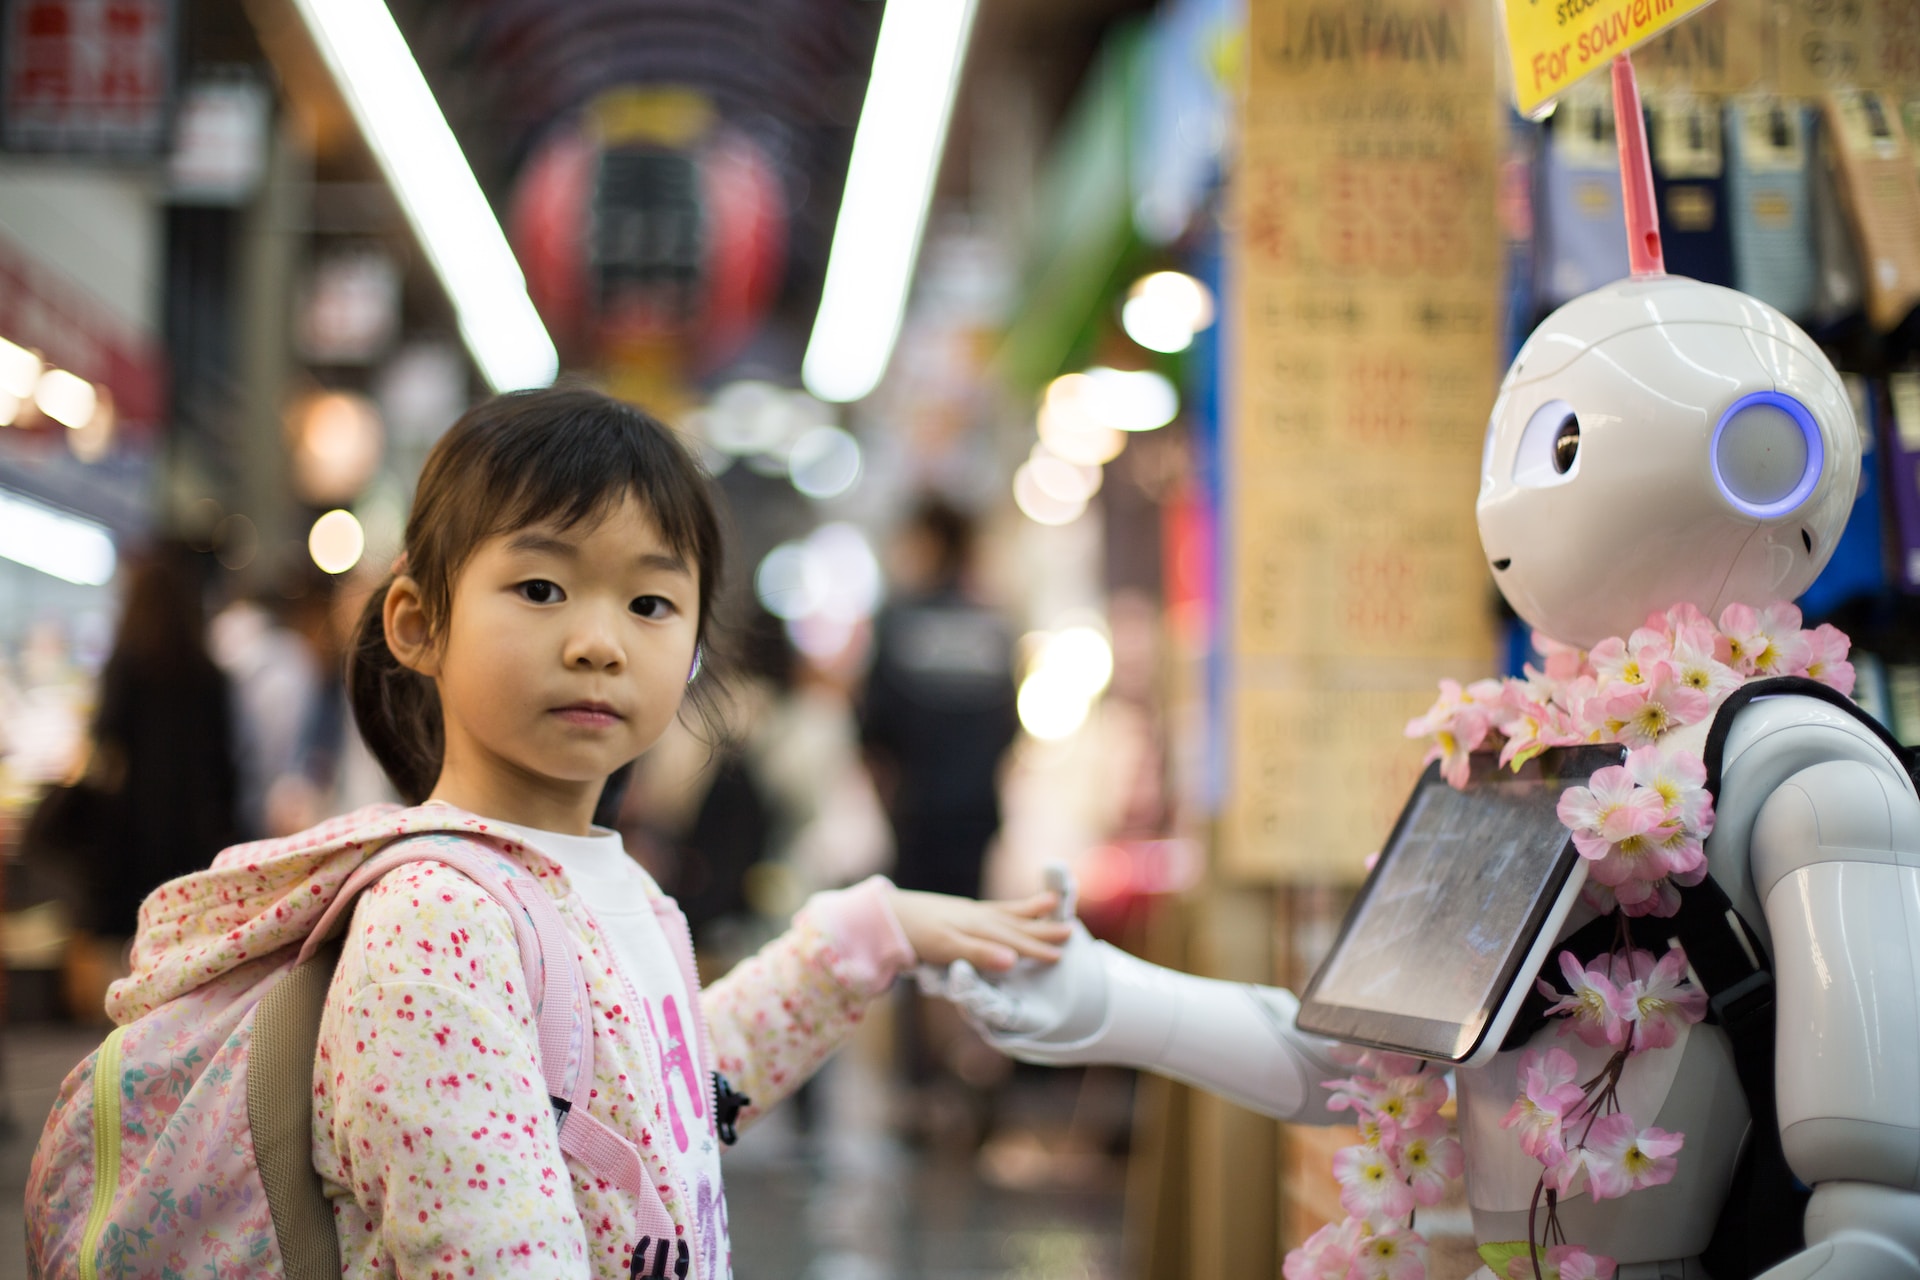 Criança e máquina com inteligência artificial